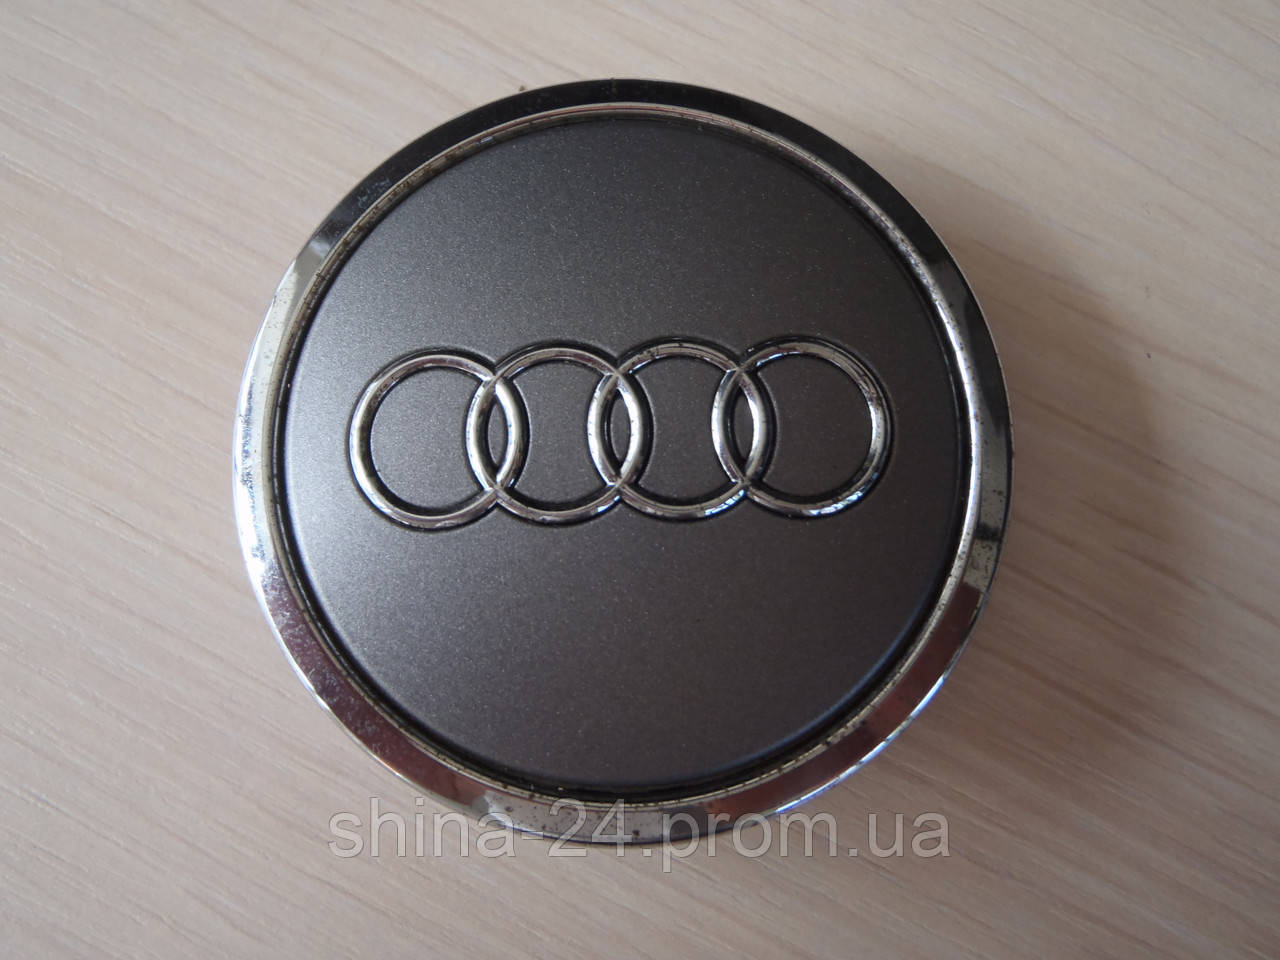 Оригинальные Колпачки заглушки на диски Audi/Ауди 69/56/14мм. 4B0 601 